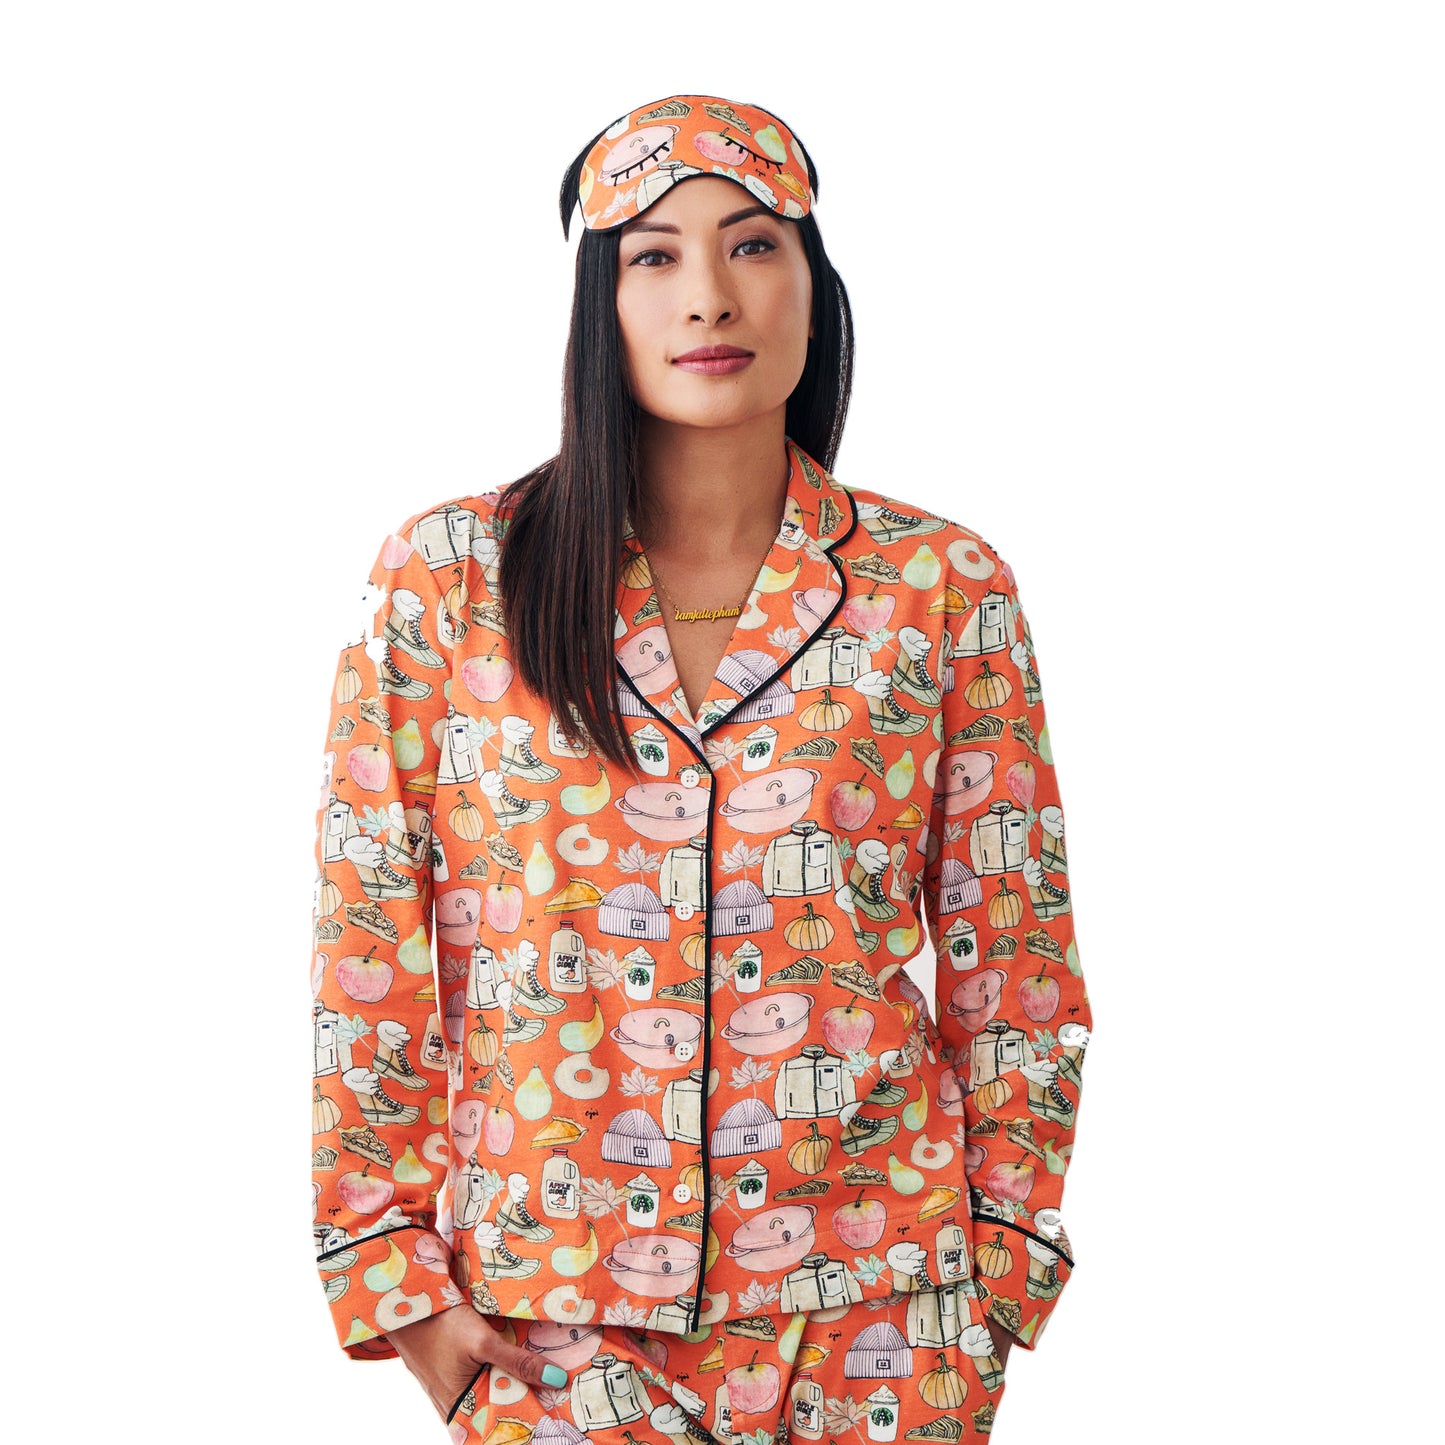 Fall Basics Jersey Pajama Set